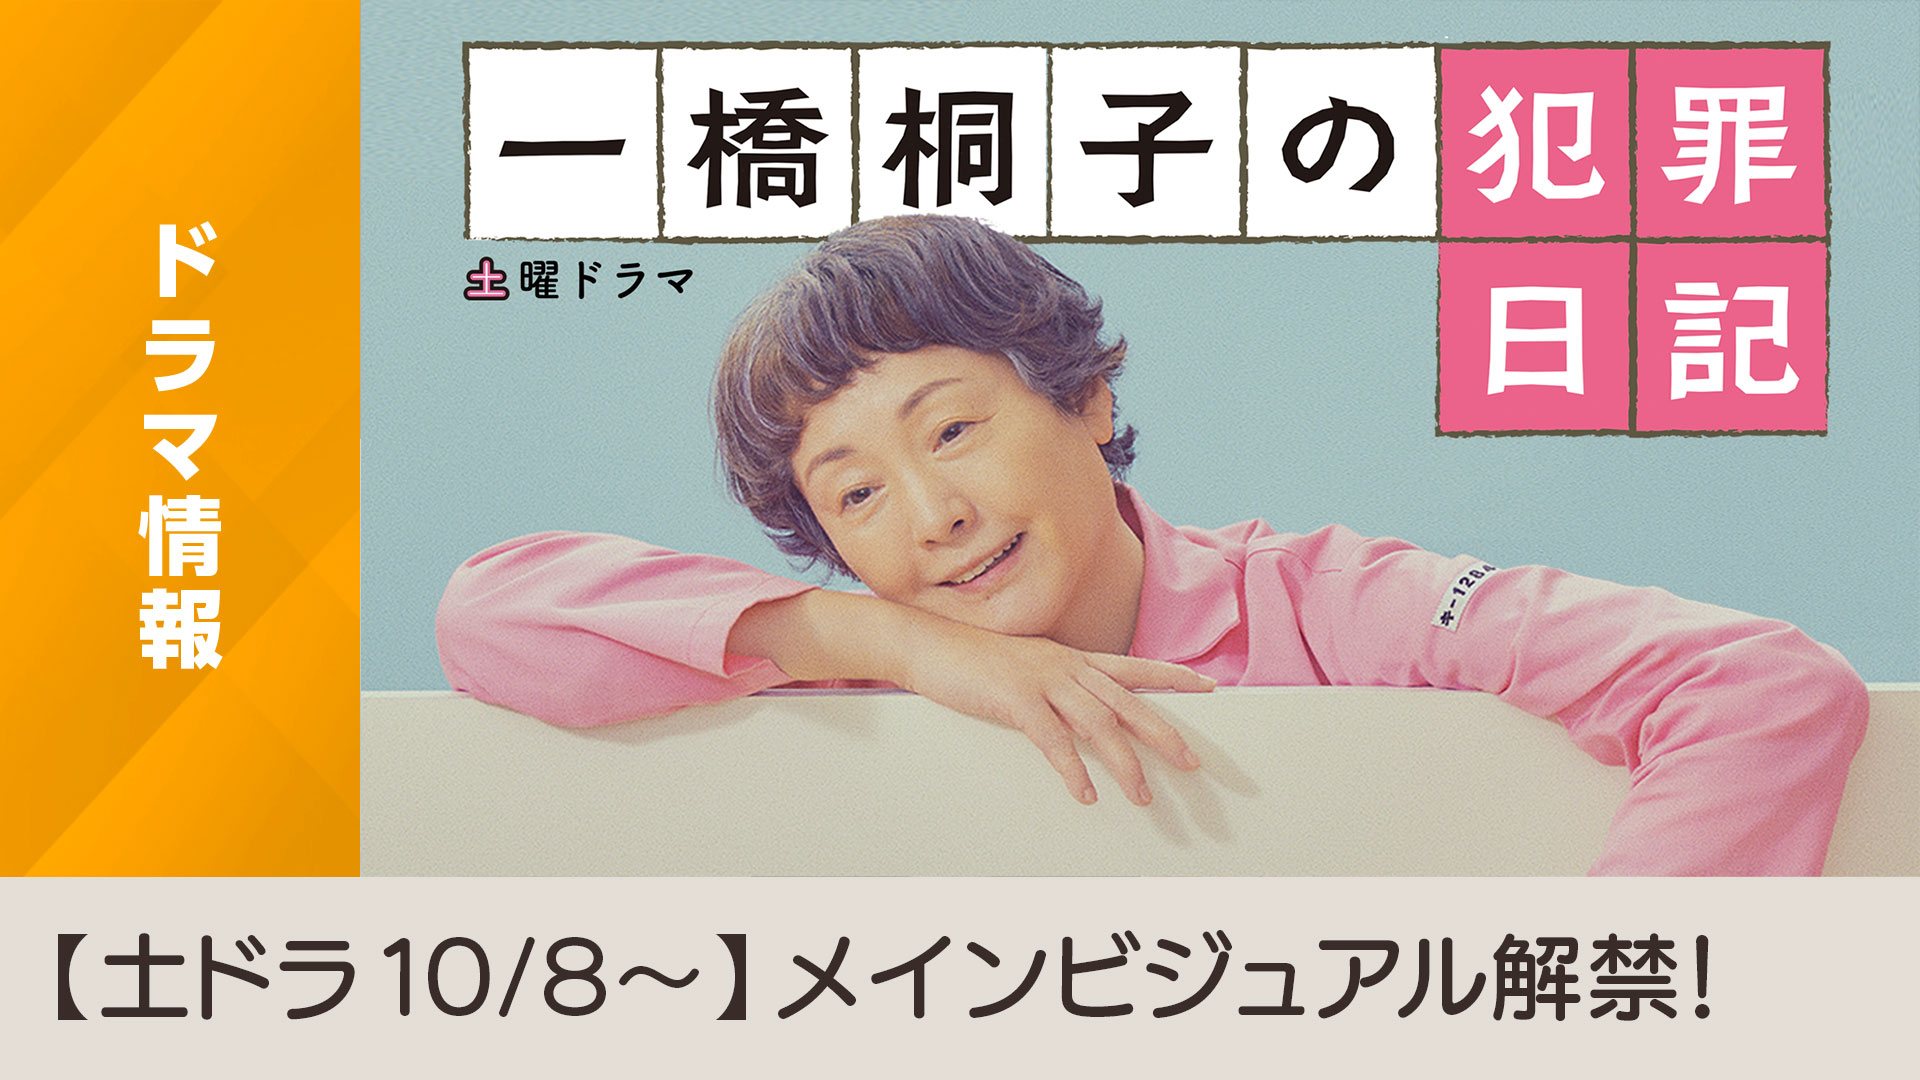 土曜ドラマ「一橋桐子の犯罪日記」メインビジュアル決定のお知らせ - NHK